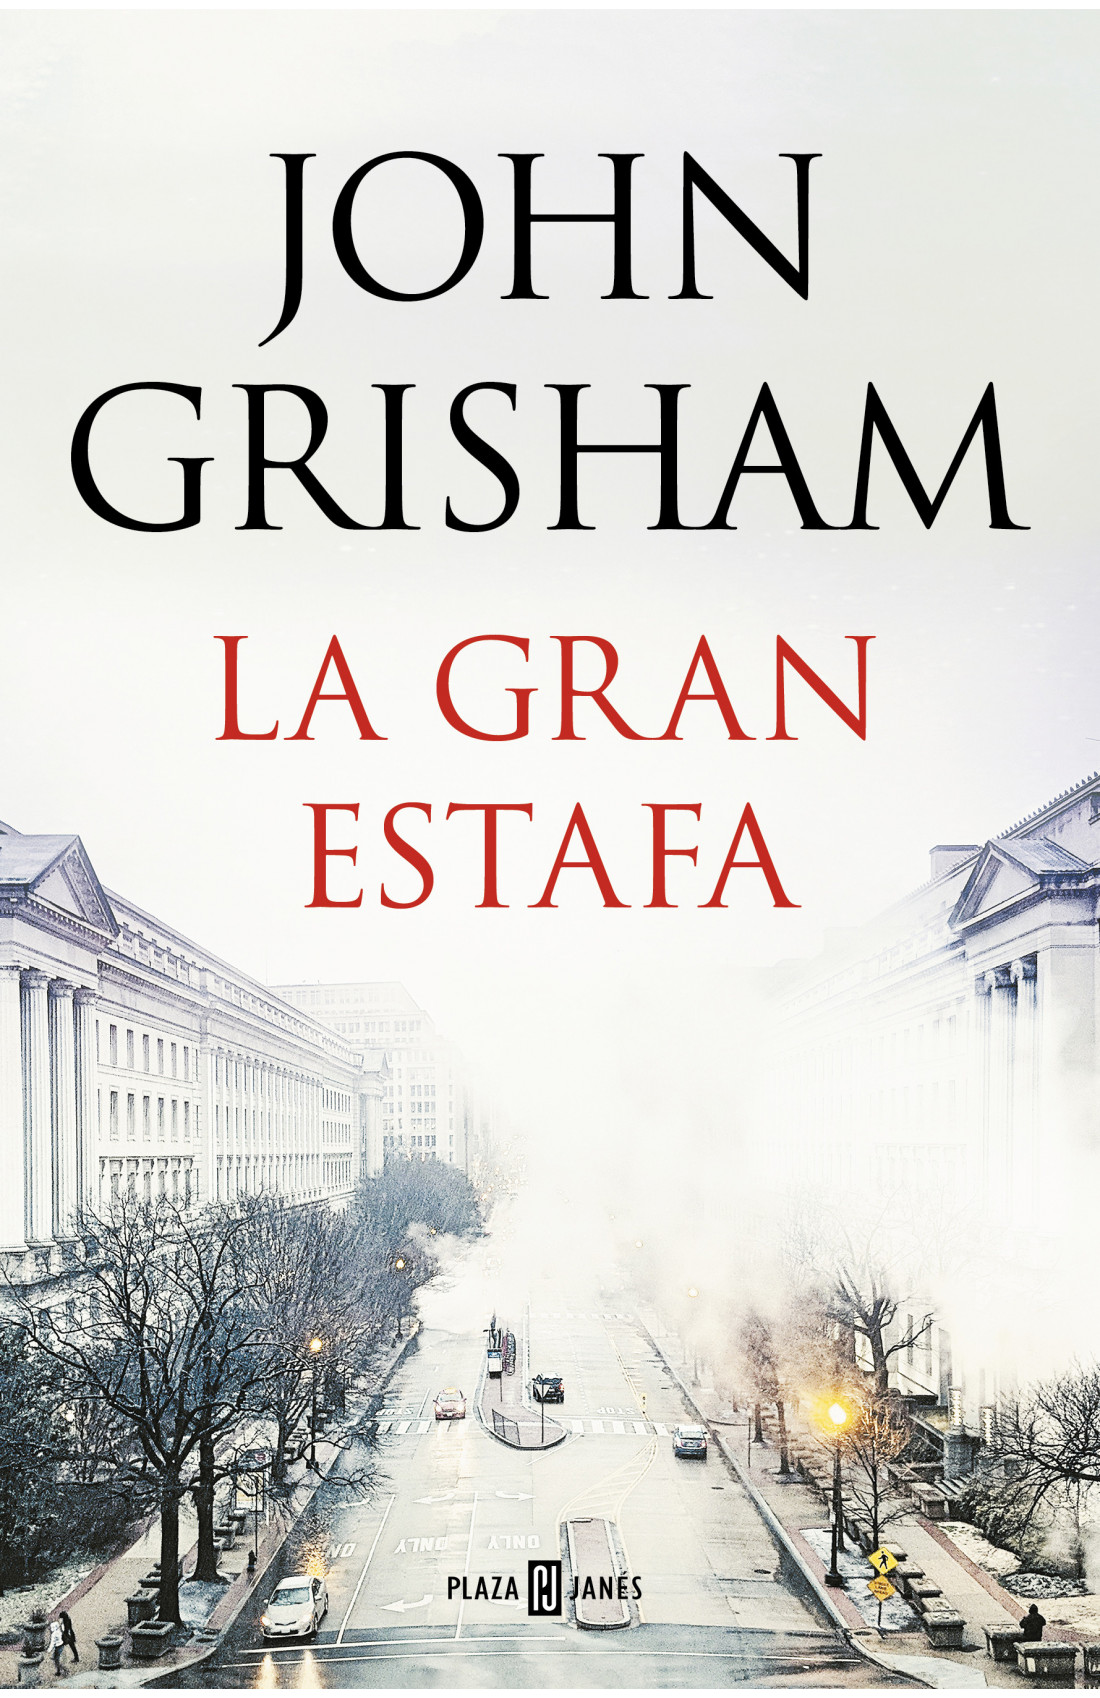 Remisión internacional Amoroso John Grisham: cinco libros para conocer al autor que dejó la abogacía y  ahora es el más vendido - Infobae